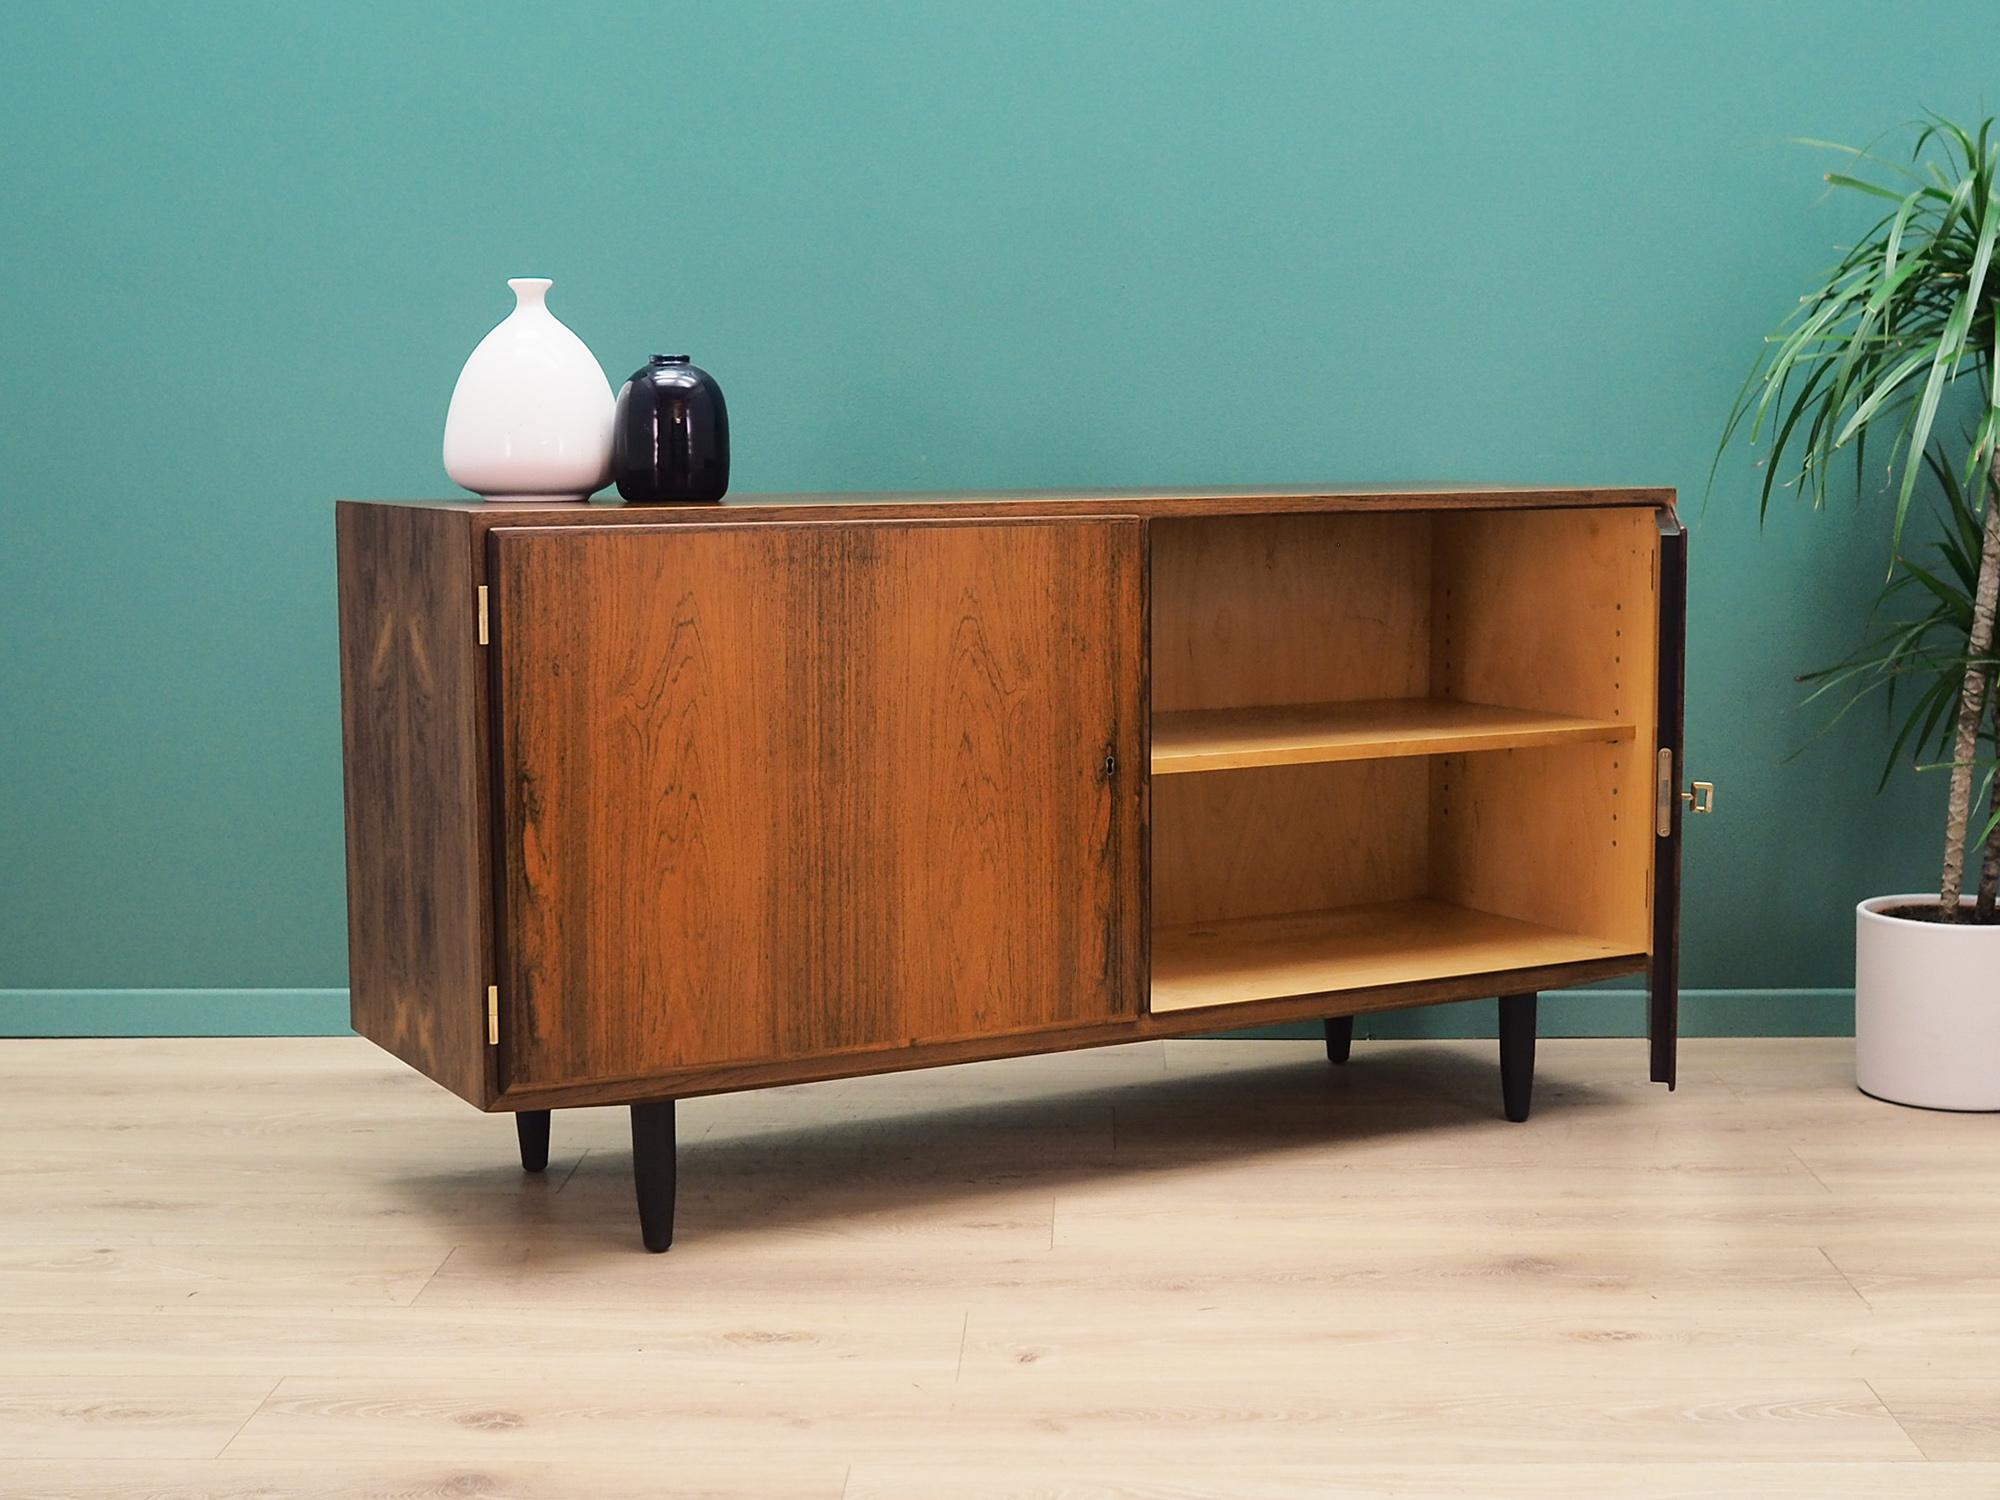 Veneer Rosewood Cabinet, Danish Design, 1960s, Designer Carlo Jensen, Producer Hundev For Sale